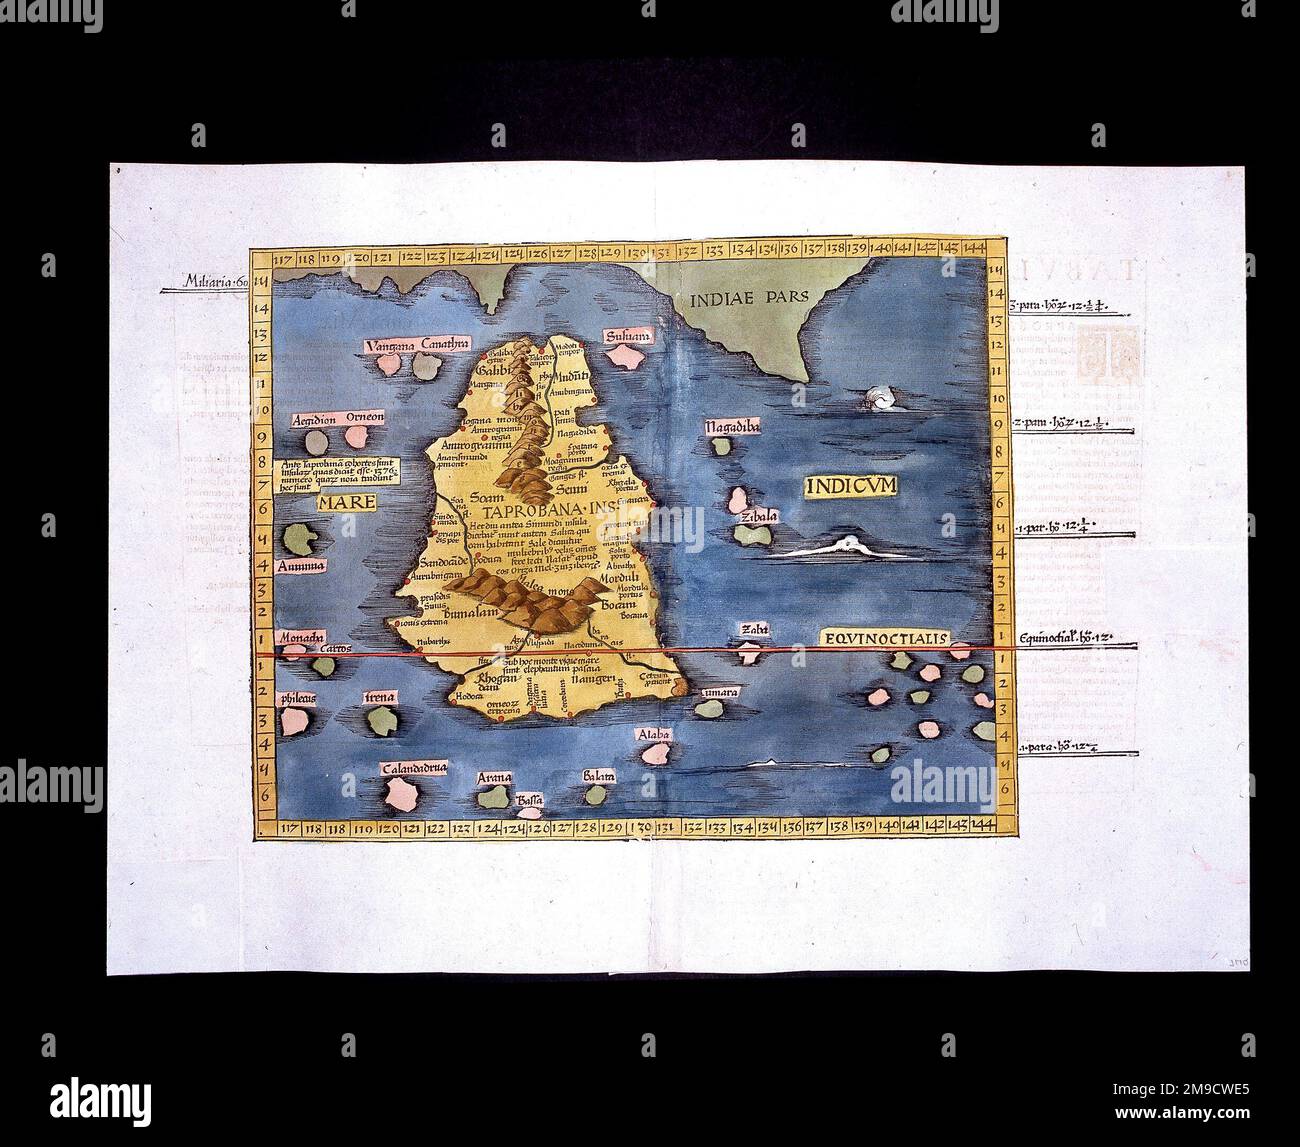 Mapa de Taprobana, tierra mítica creada por Ptolomeo, confundida con Sri Lanka (Ceilán) Foto de stock